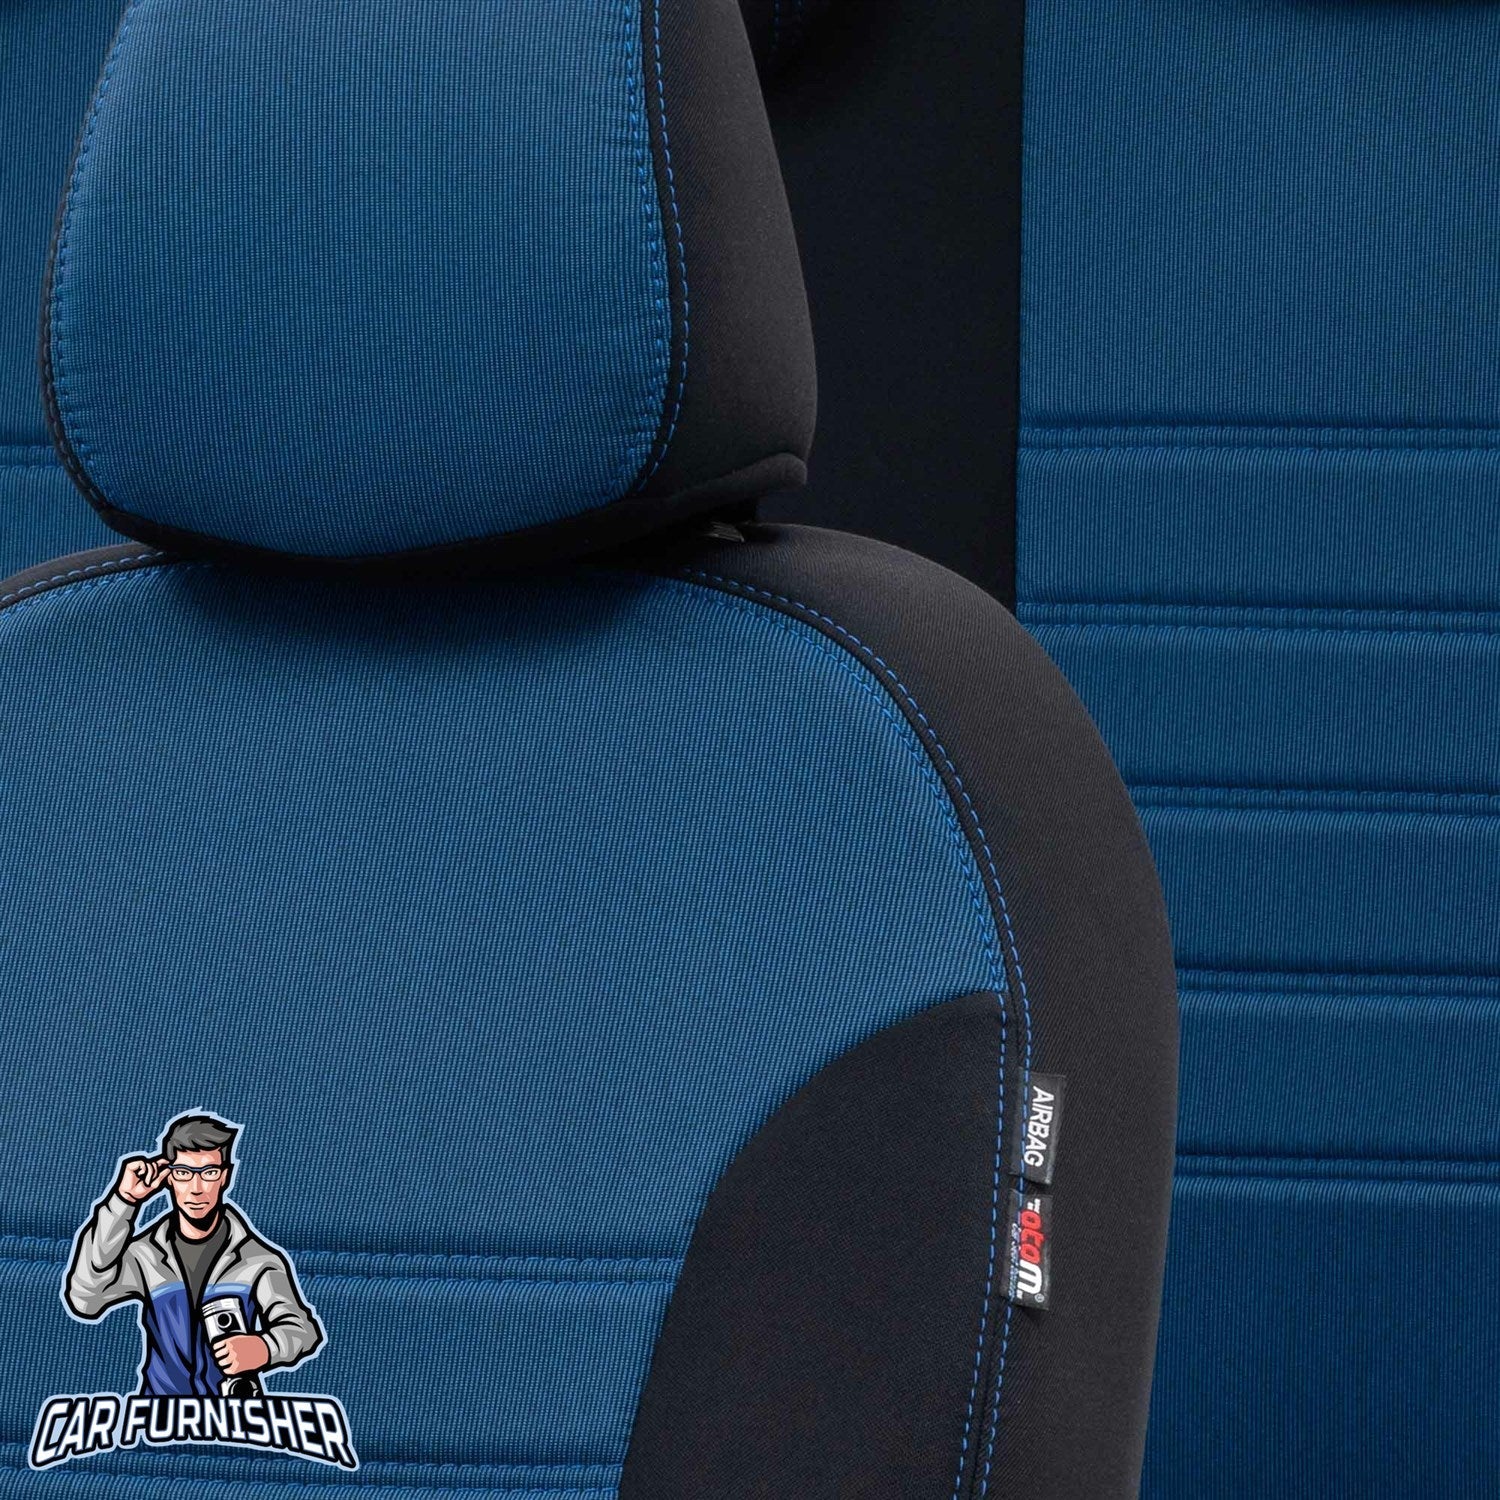 Toyota Auris Seat Cover Original Jacquard Design Blue Jacquard Fabric